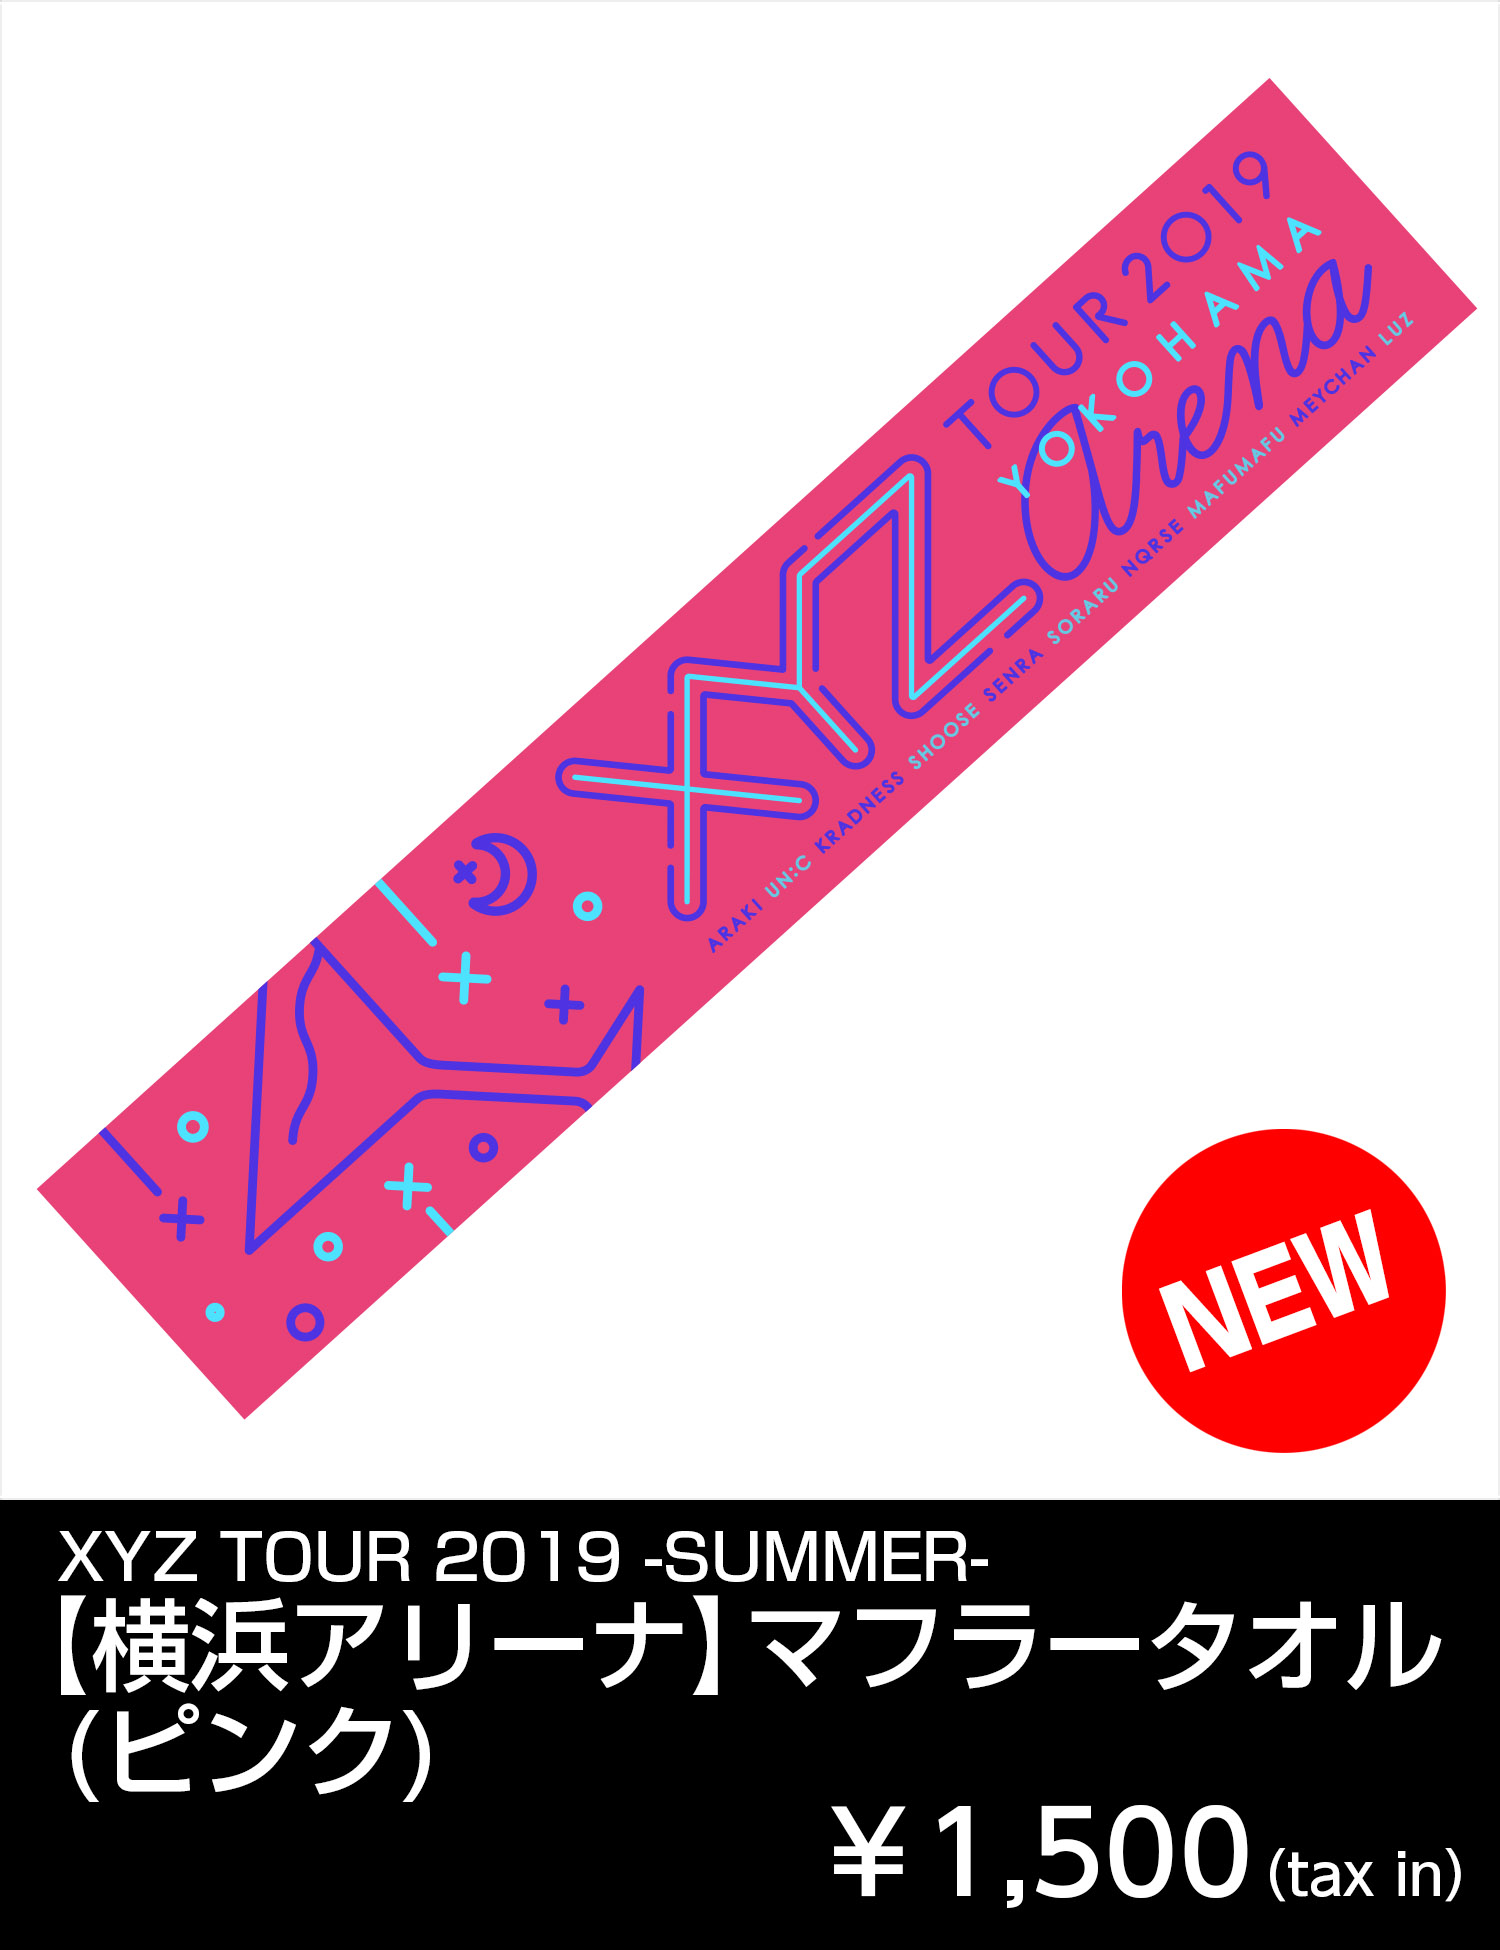 XYZ TOUR 2019 -SUMMER- | GOODS